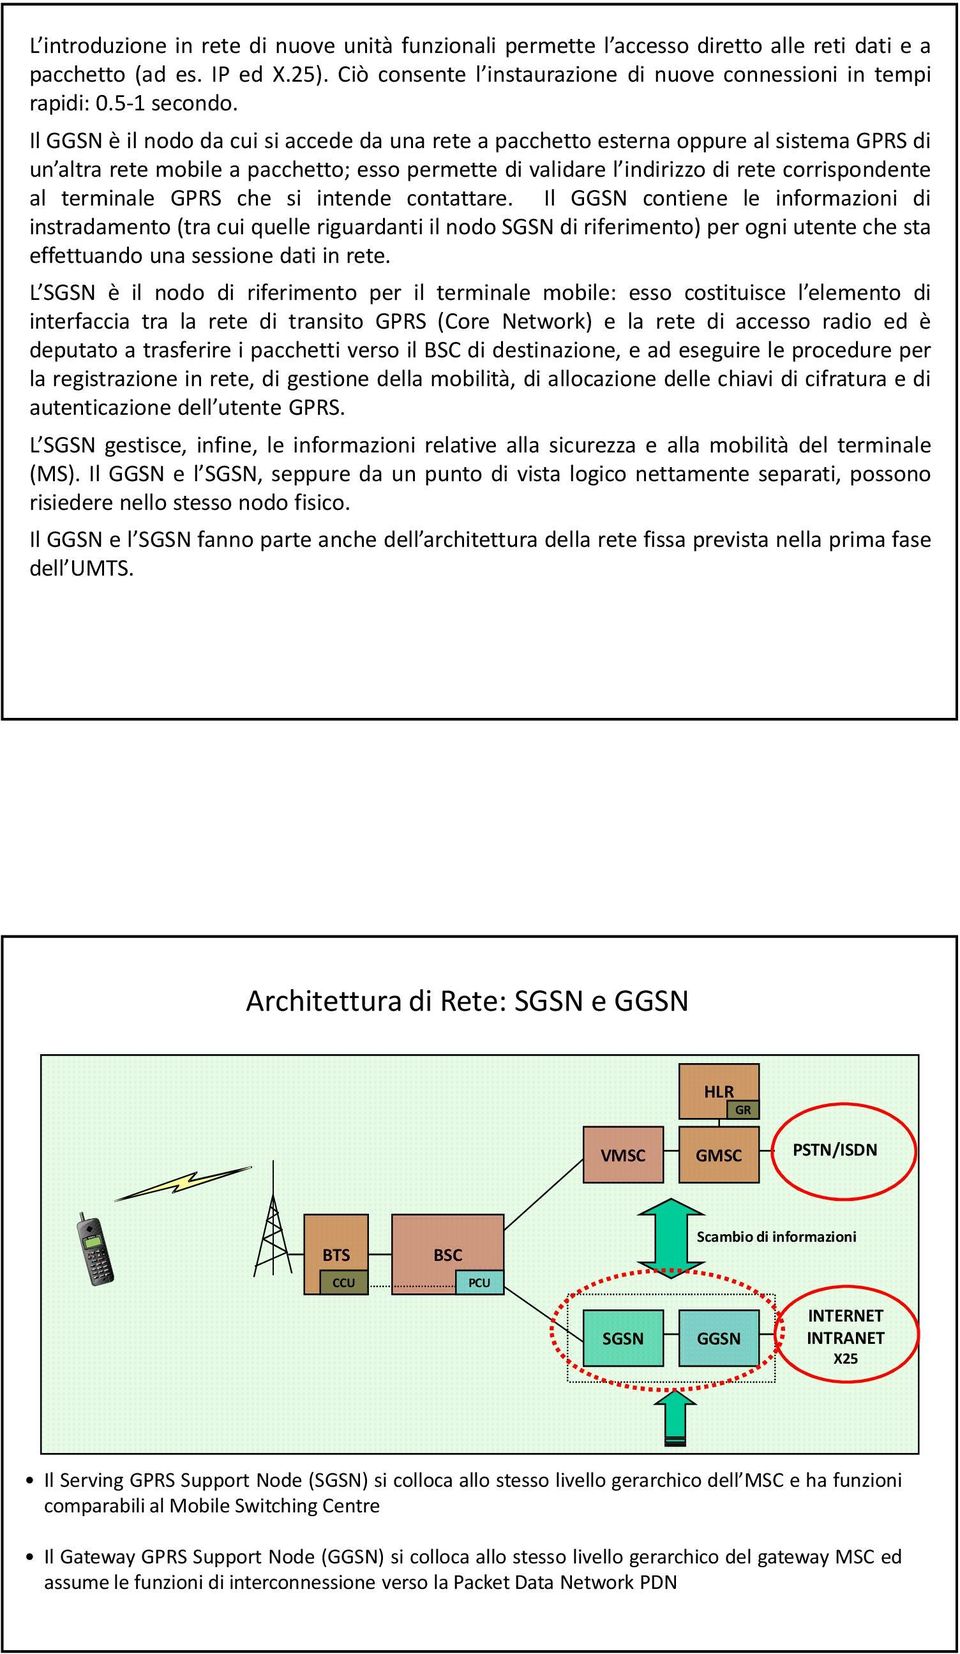 IlGGSNèil nododa cuisiaccededa una reteapacchettoesterna oppurealsistema GPRSdi un altra rete mobile a pacchetto; esso permette di validare l indirizzo di rete corrispondente al terminale GPRS che si